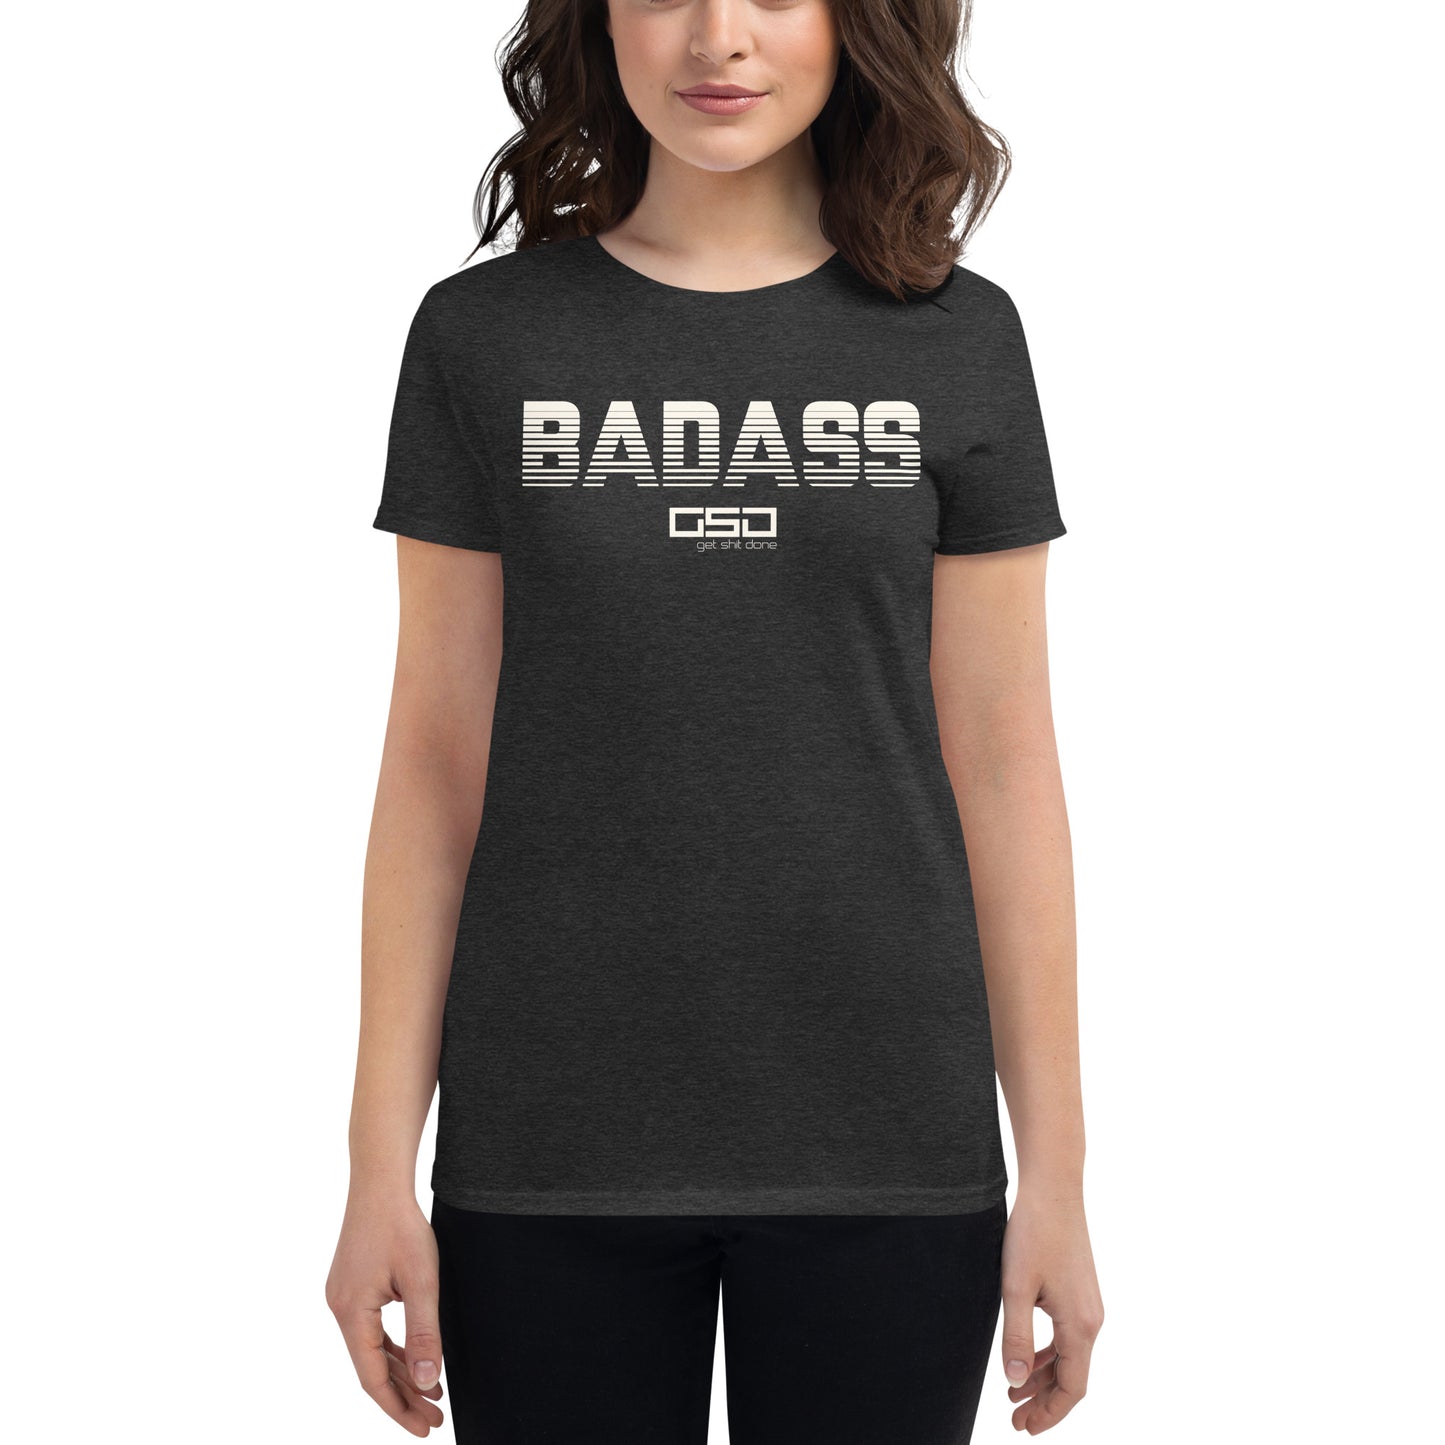 BADASS-Women's short sleeve t-shirt